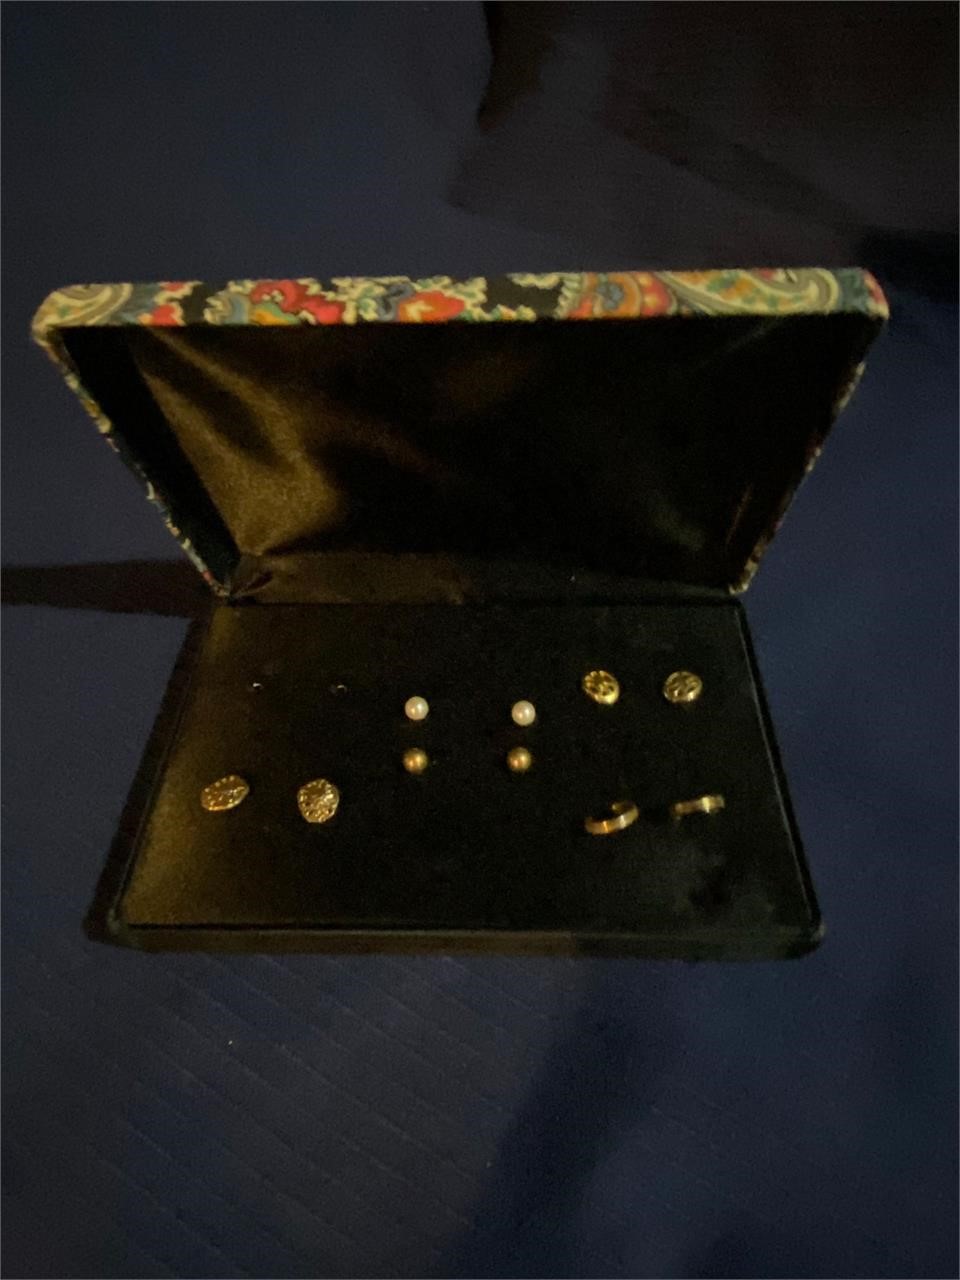 Earrings in jewelry box